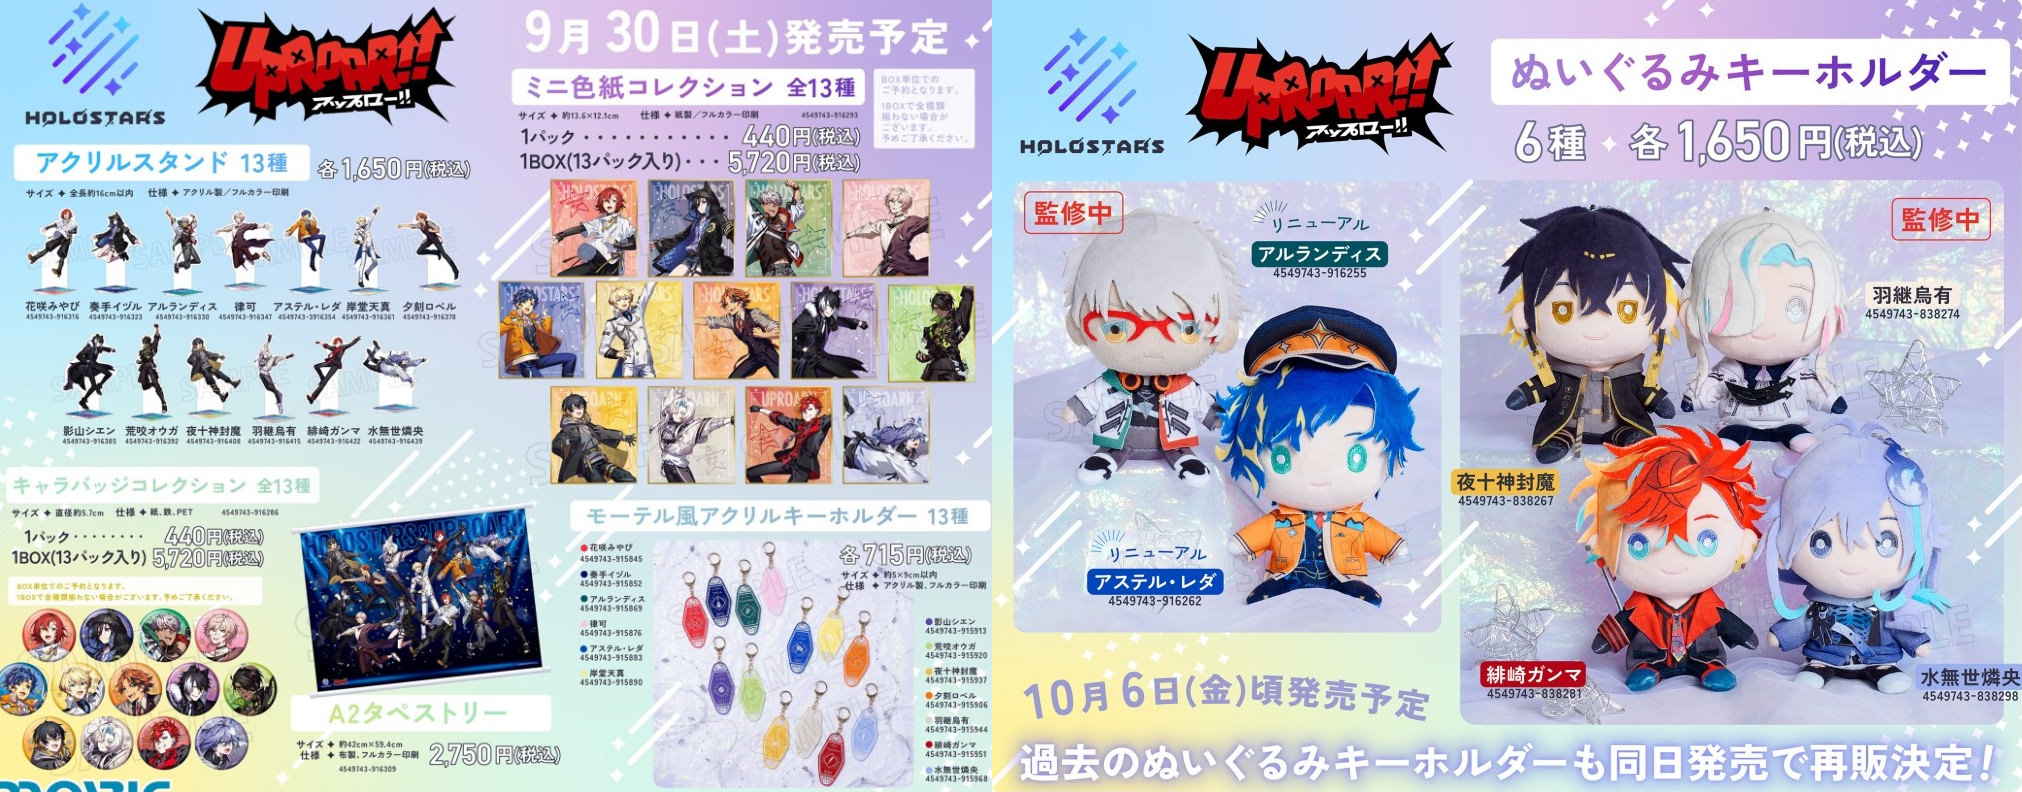 ホロスターズ 4周年記念フェア in アニメイト 9月30日より開催!